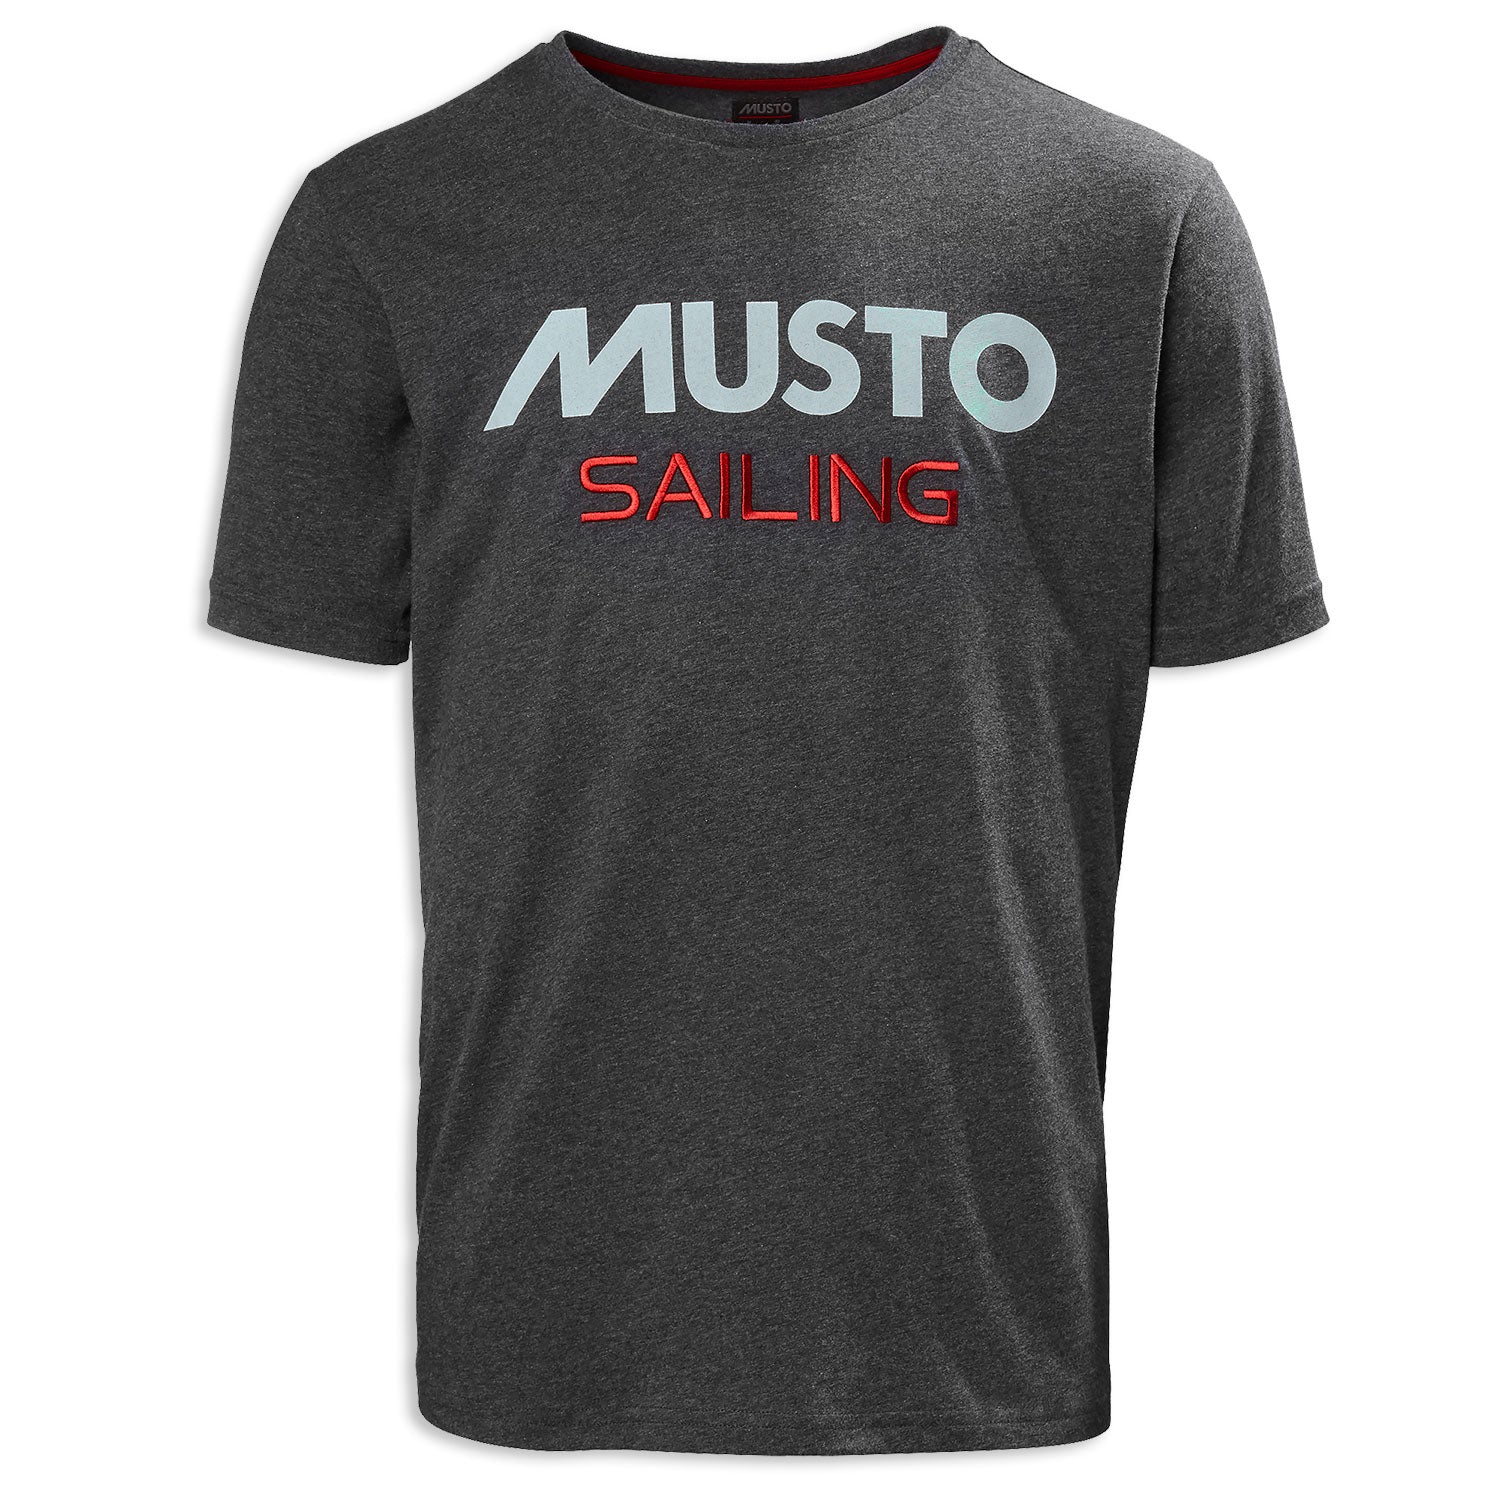 Carbon Musto Sailing T-Shirt